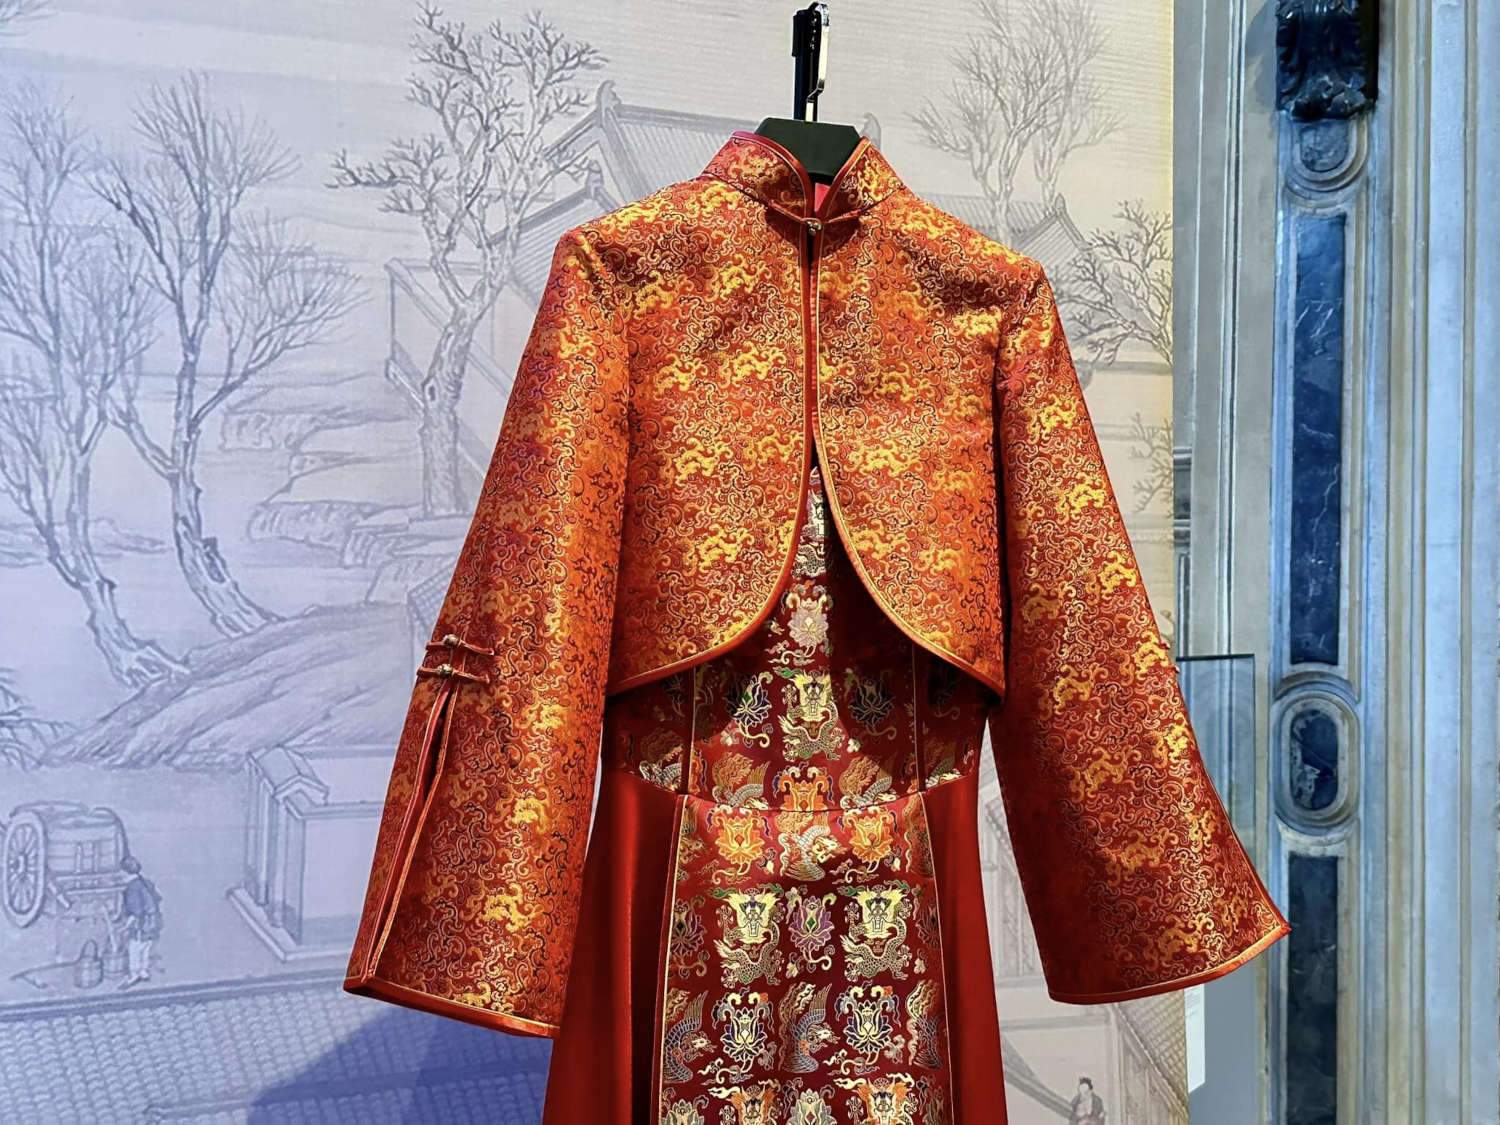 Exposition de tissus vestimentaires de Venise et de Suzhou au Palazzo Mocenigo